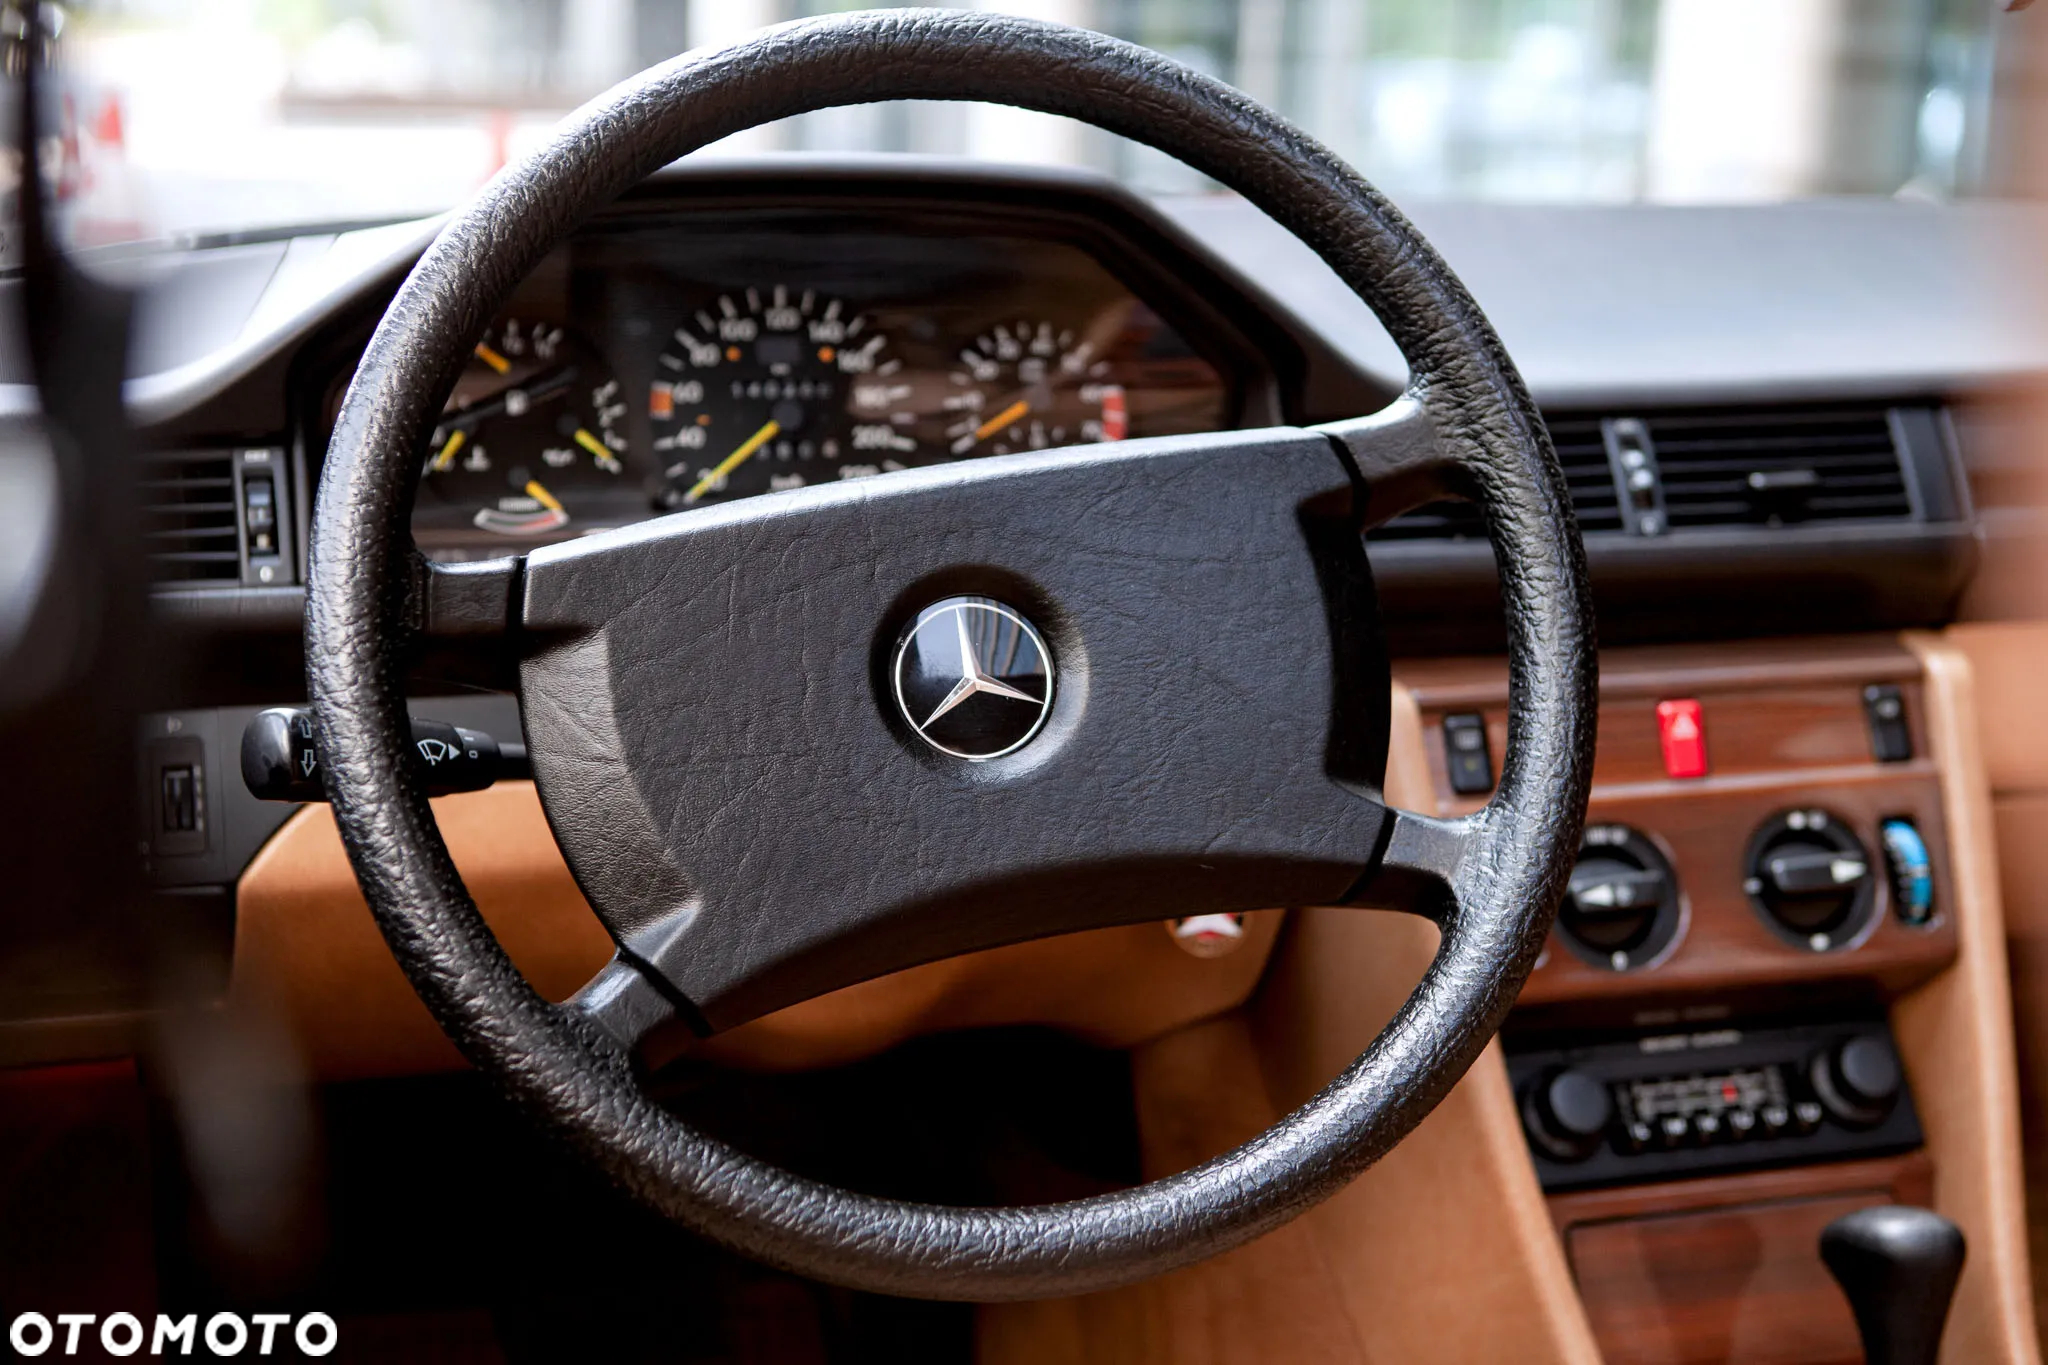 Mercedes-Benz W124 (1984-1993) - 17